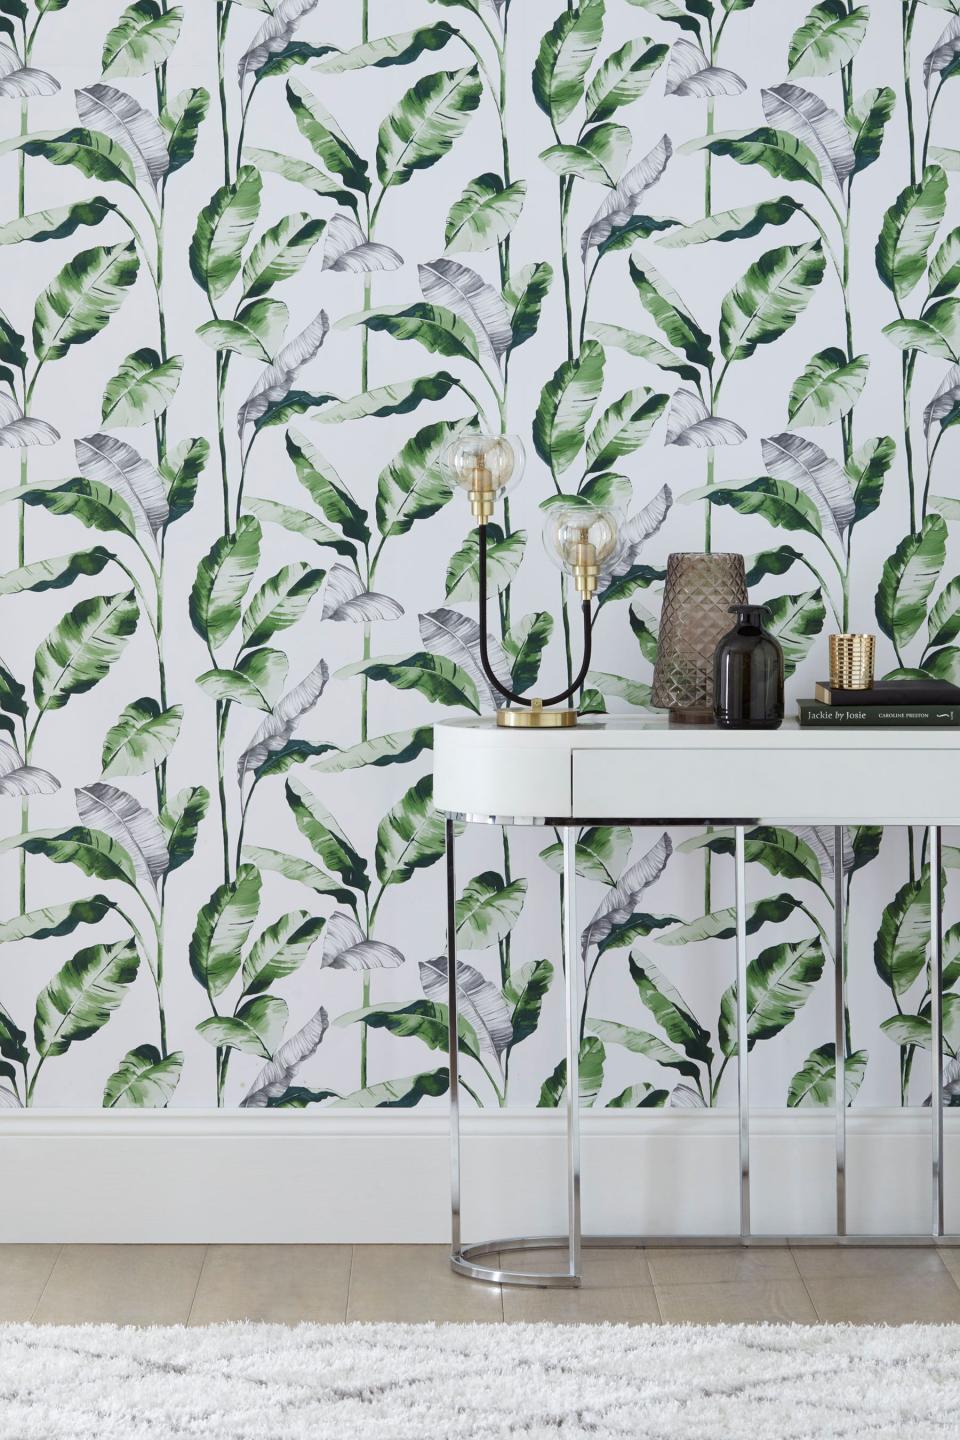 13 bedroom wallpaper ideas to transform plain walls